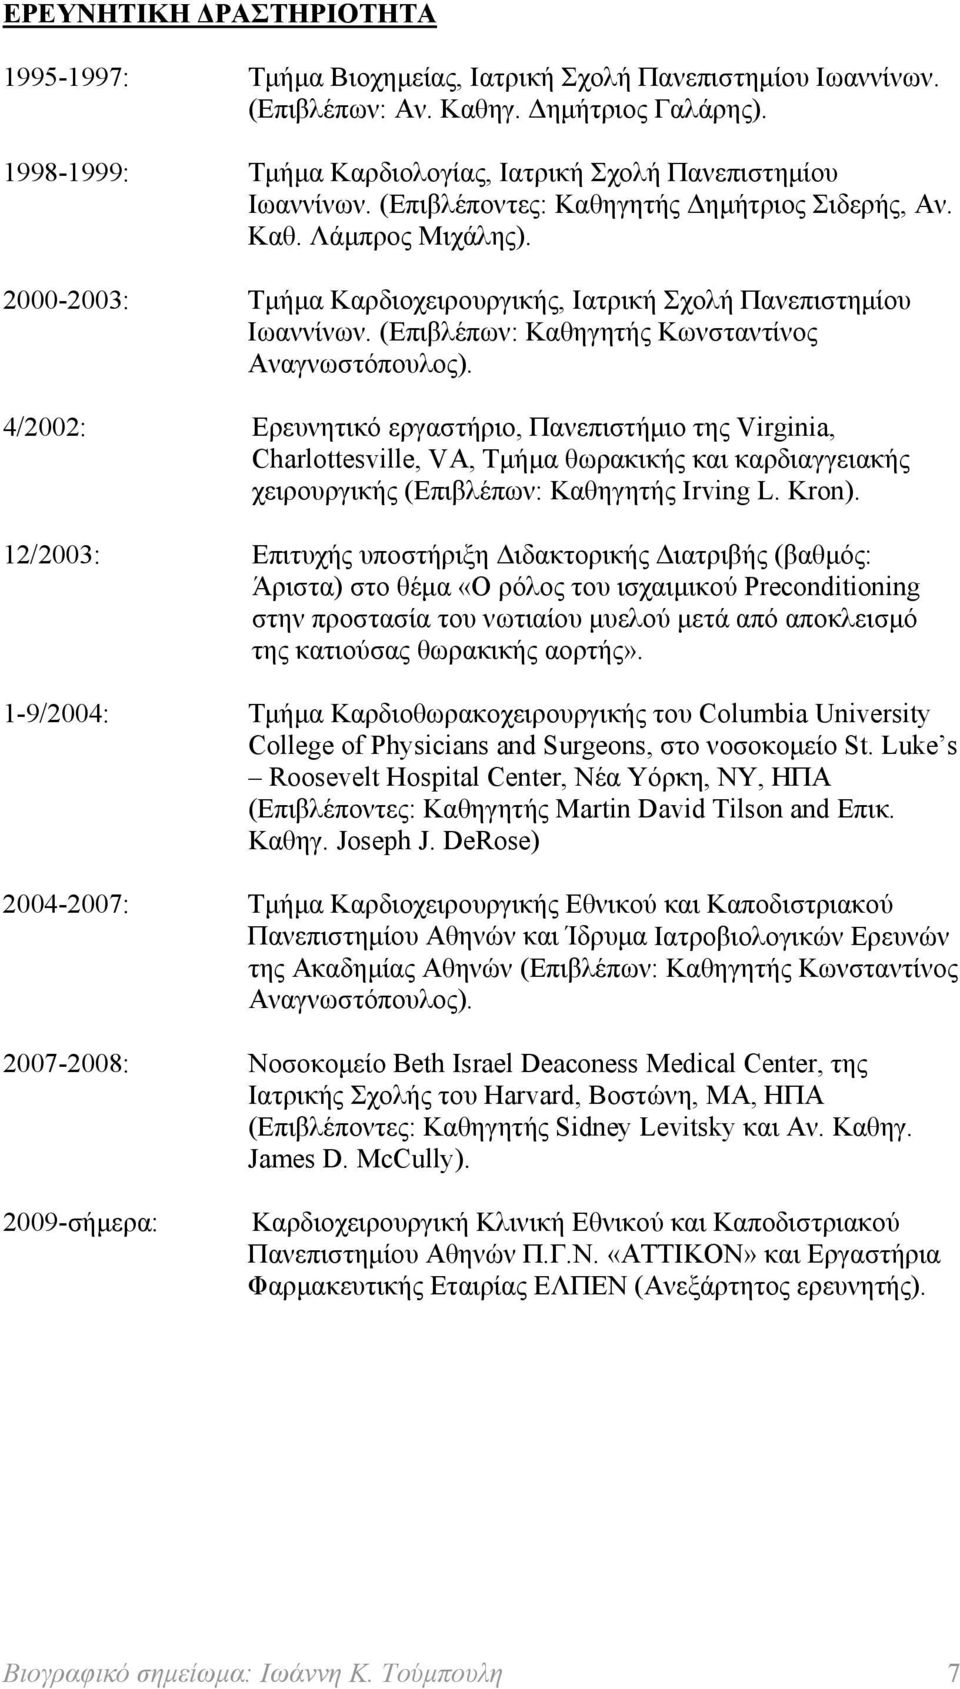 2000-2003: Τμήμα Καρδιοχειρουργικής, Ιατρική Σχολή Πανεπιστημίου Ιωαννίνων. (Επιβλέπων: Καθηγητής Κωνσταντίνος Αναγνωστόπουλος).